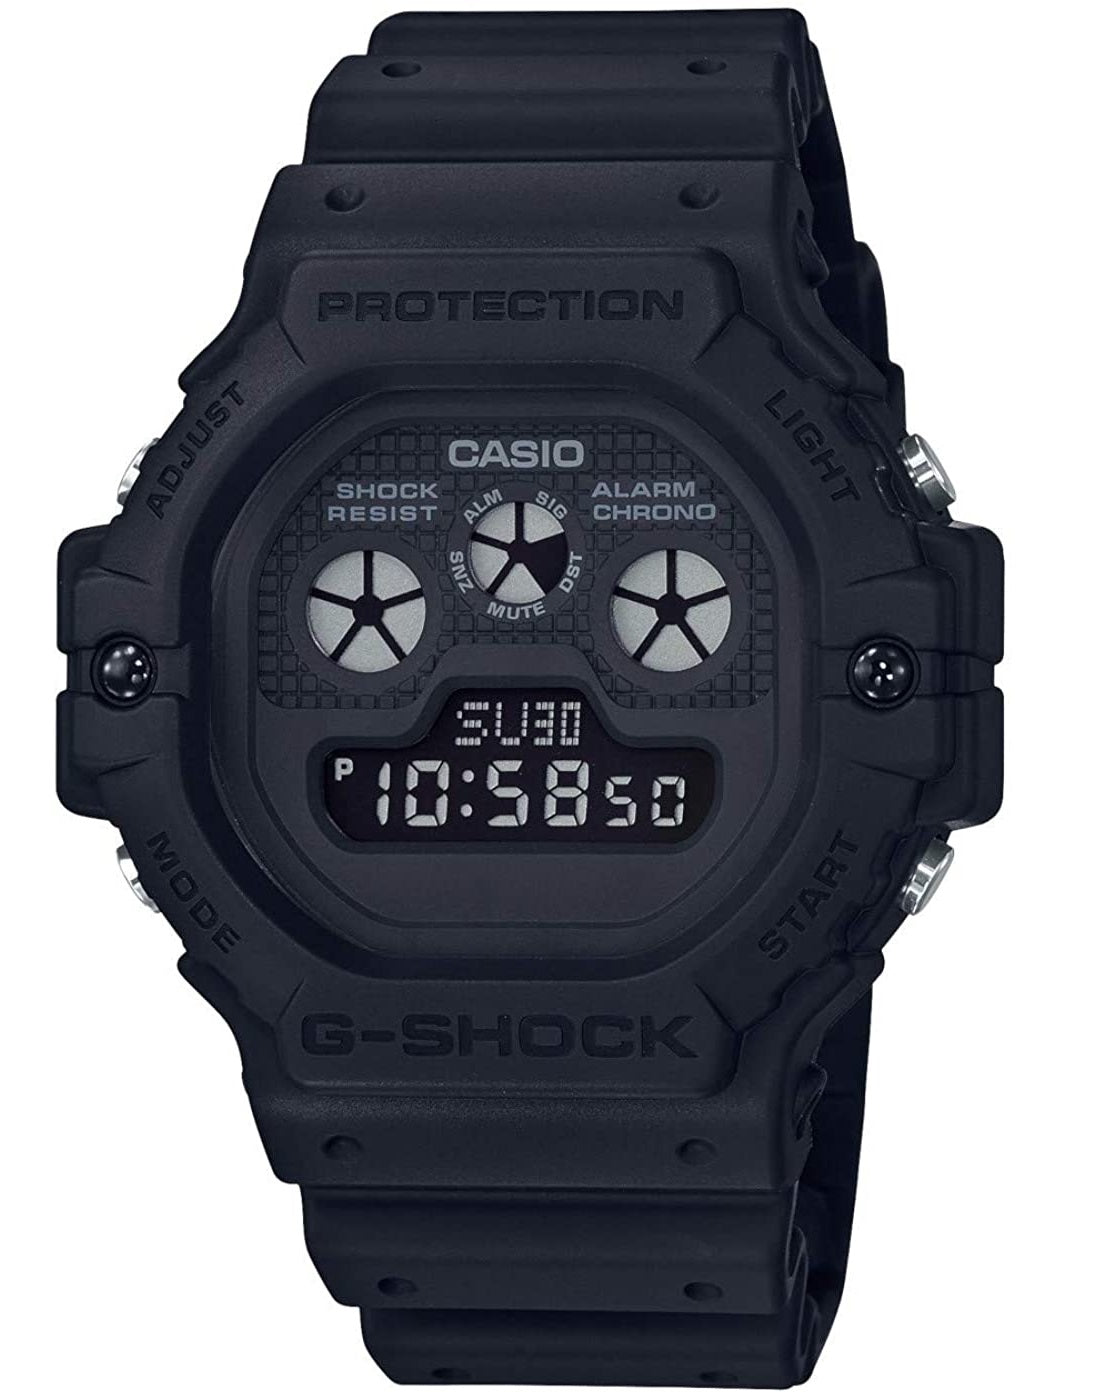 Casio G-shock DW-5900BB-1 Digital Rubber Strap Watch For Men-Watch Portal Philippines